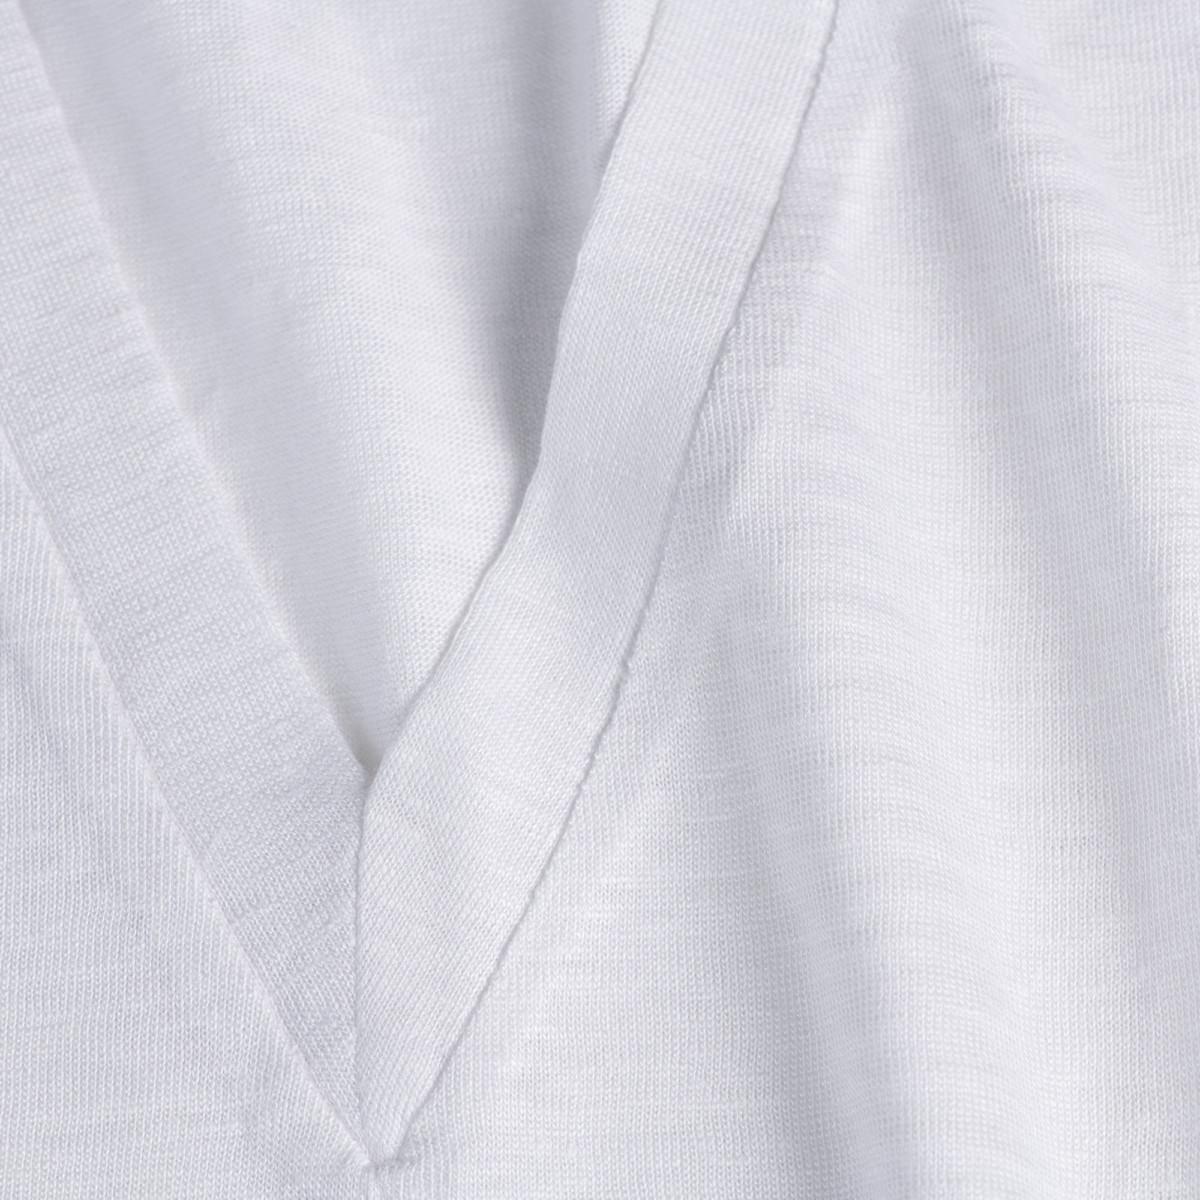 Top V  for woman 100% Capri white linen top detail